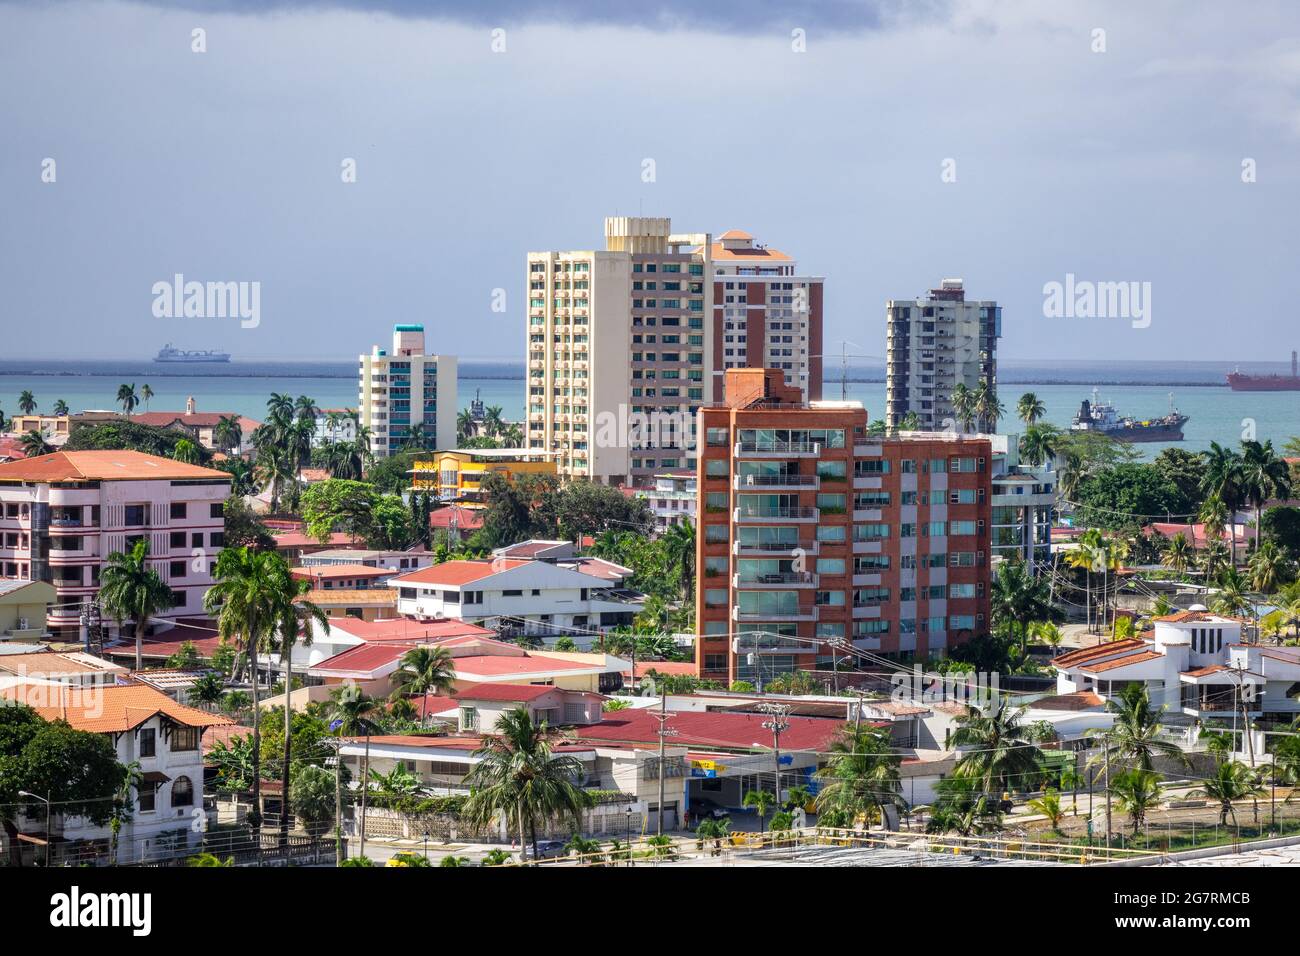 Quartier résidentiel de Colon Panama avec maisons et immeubles d'appartements de grande hauteur donnant sur l'entrée du canal de Panama Banque D'Images